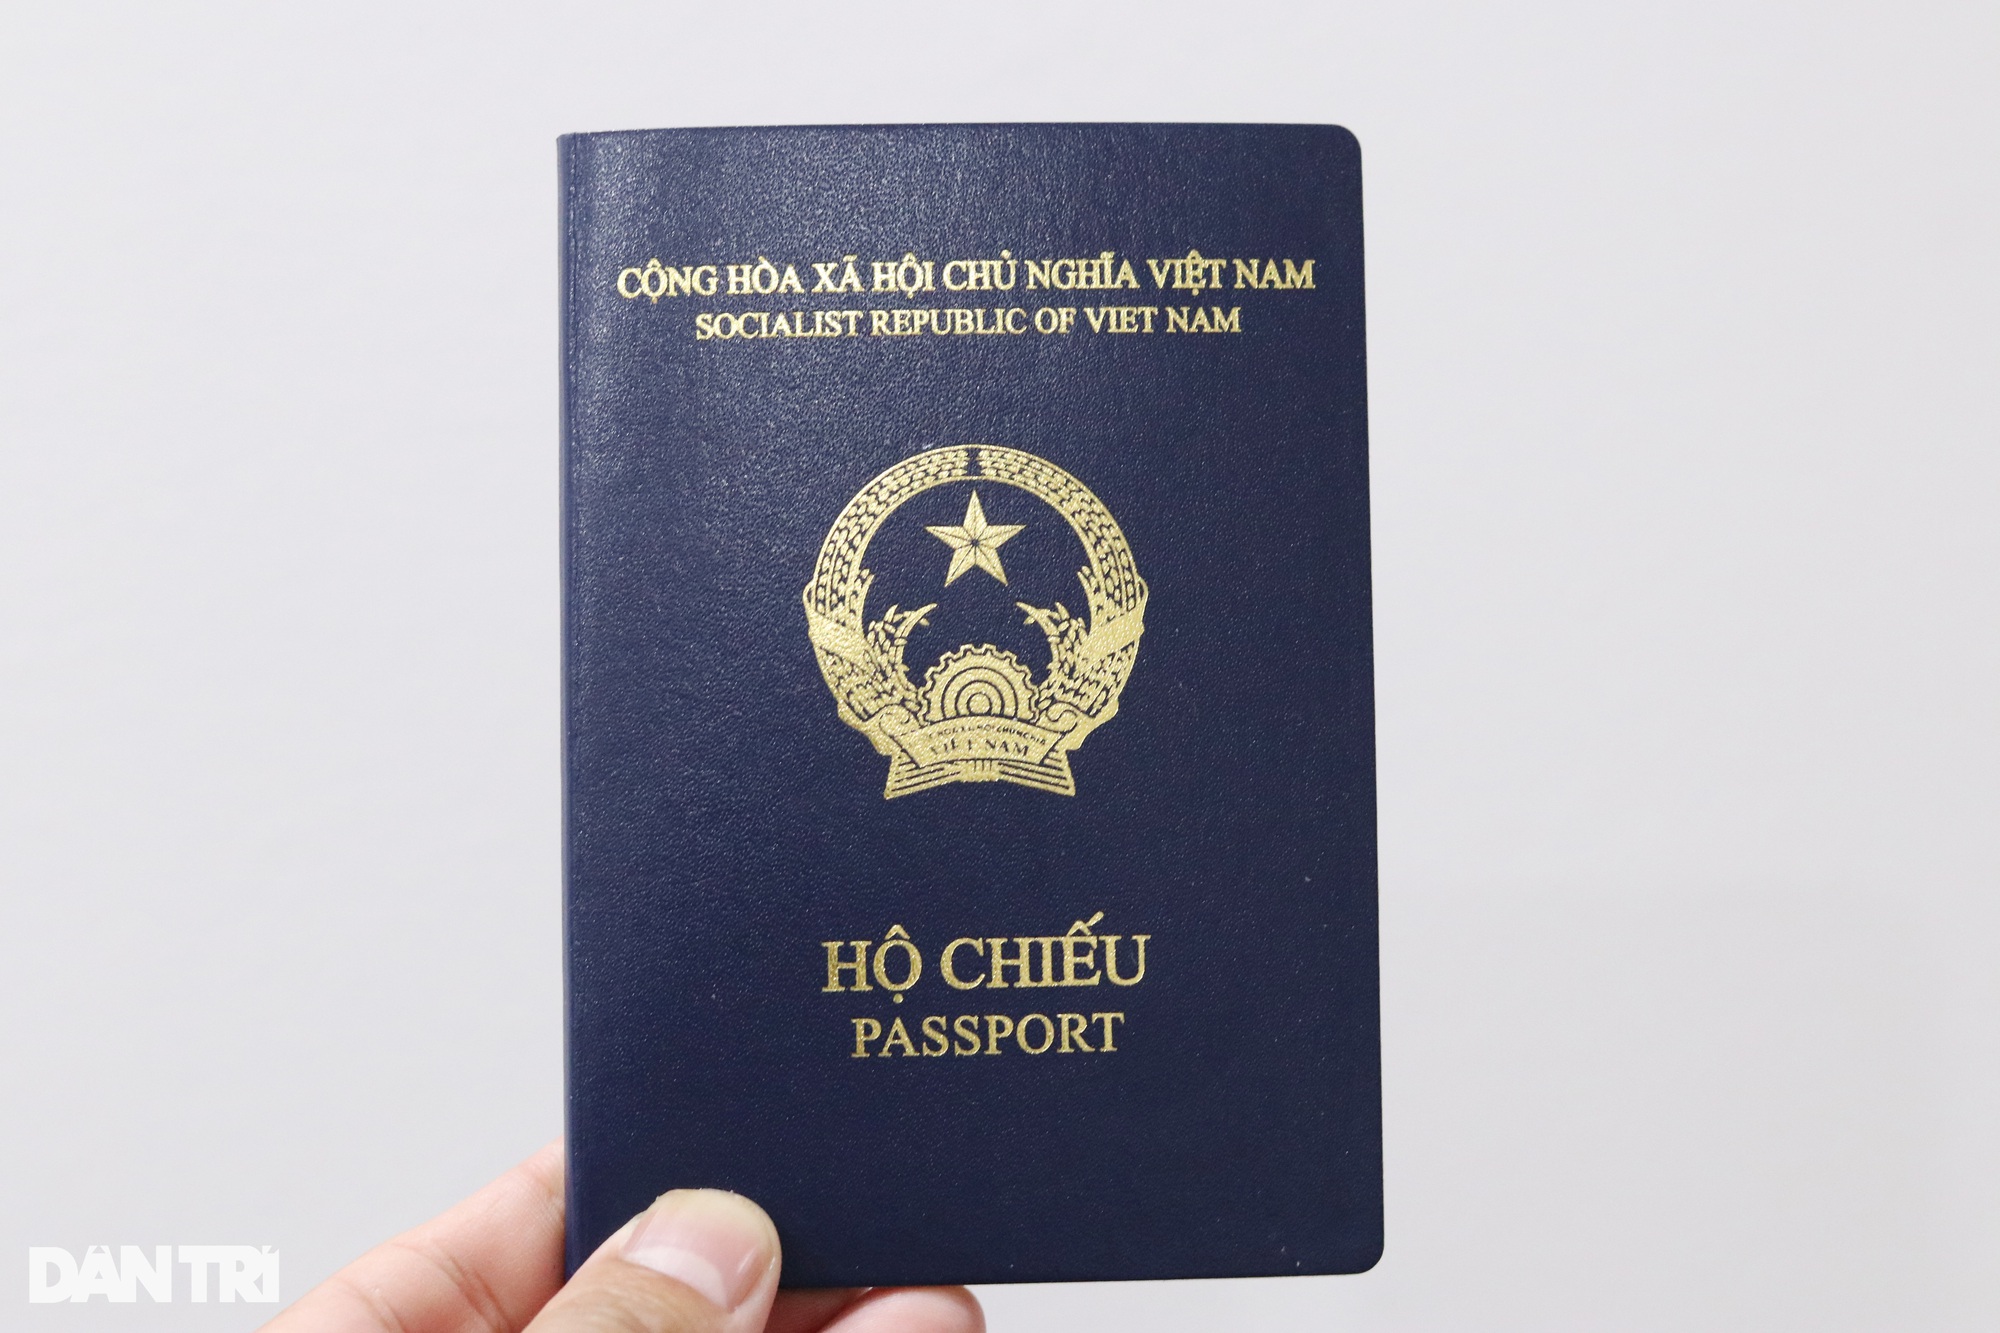 Khi nào được bổ sung nơi sinh vào hộ chiếu mẫu mới? - Ảnh 3.